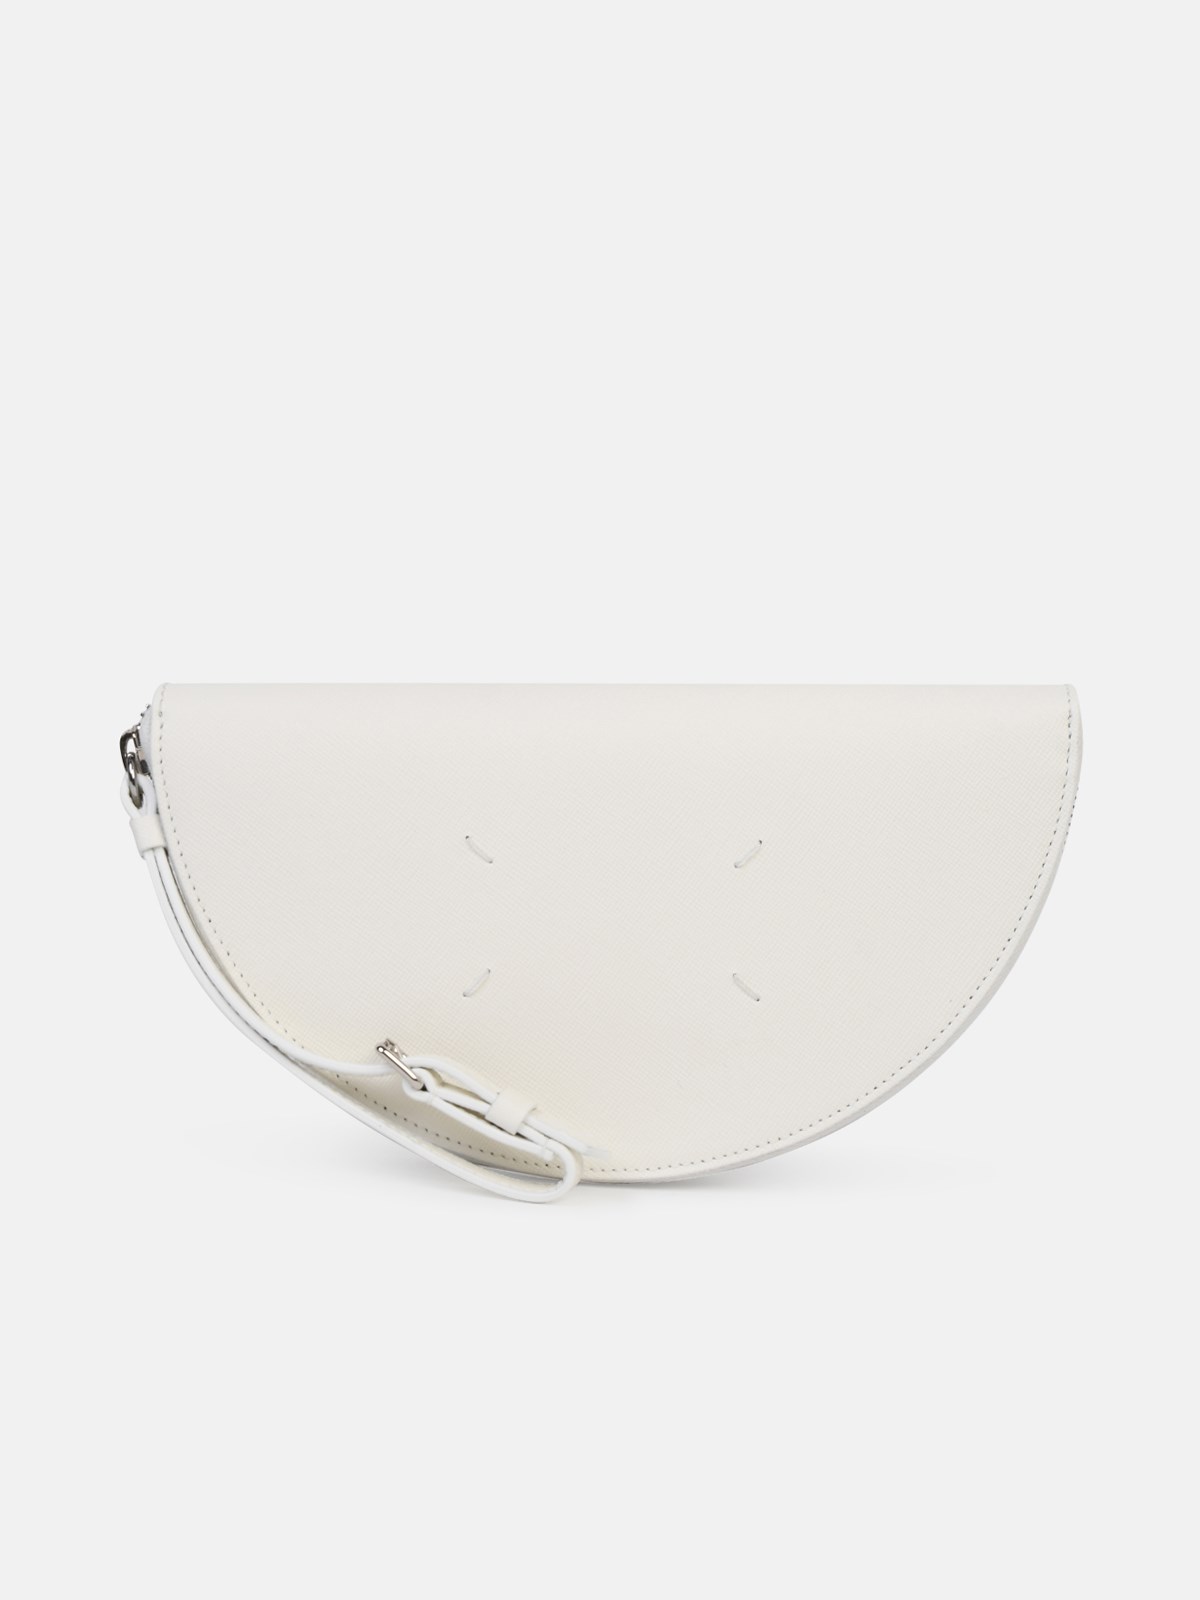 Shop Maison Margiela White Saffiano Leather Clutch Bag